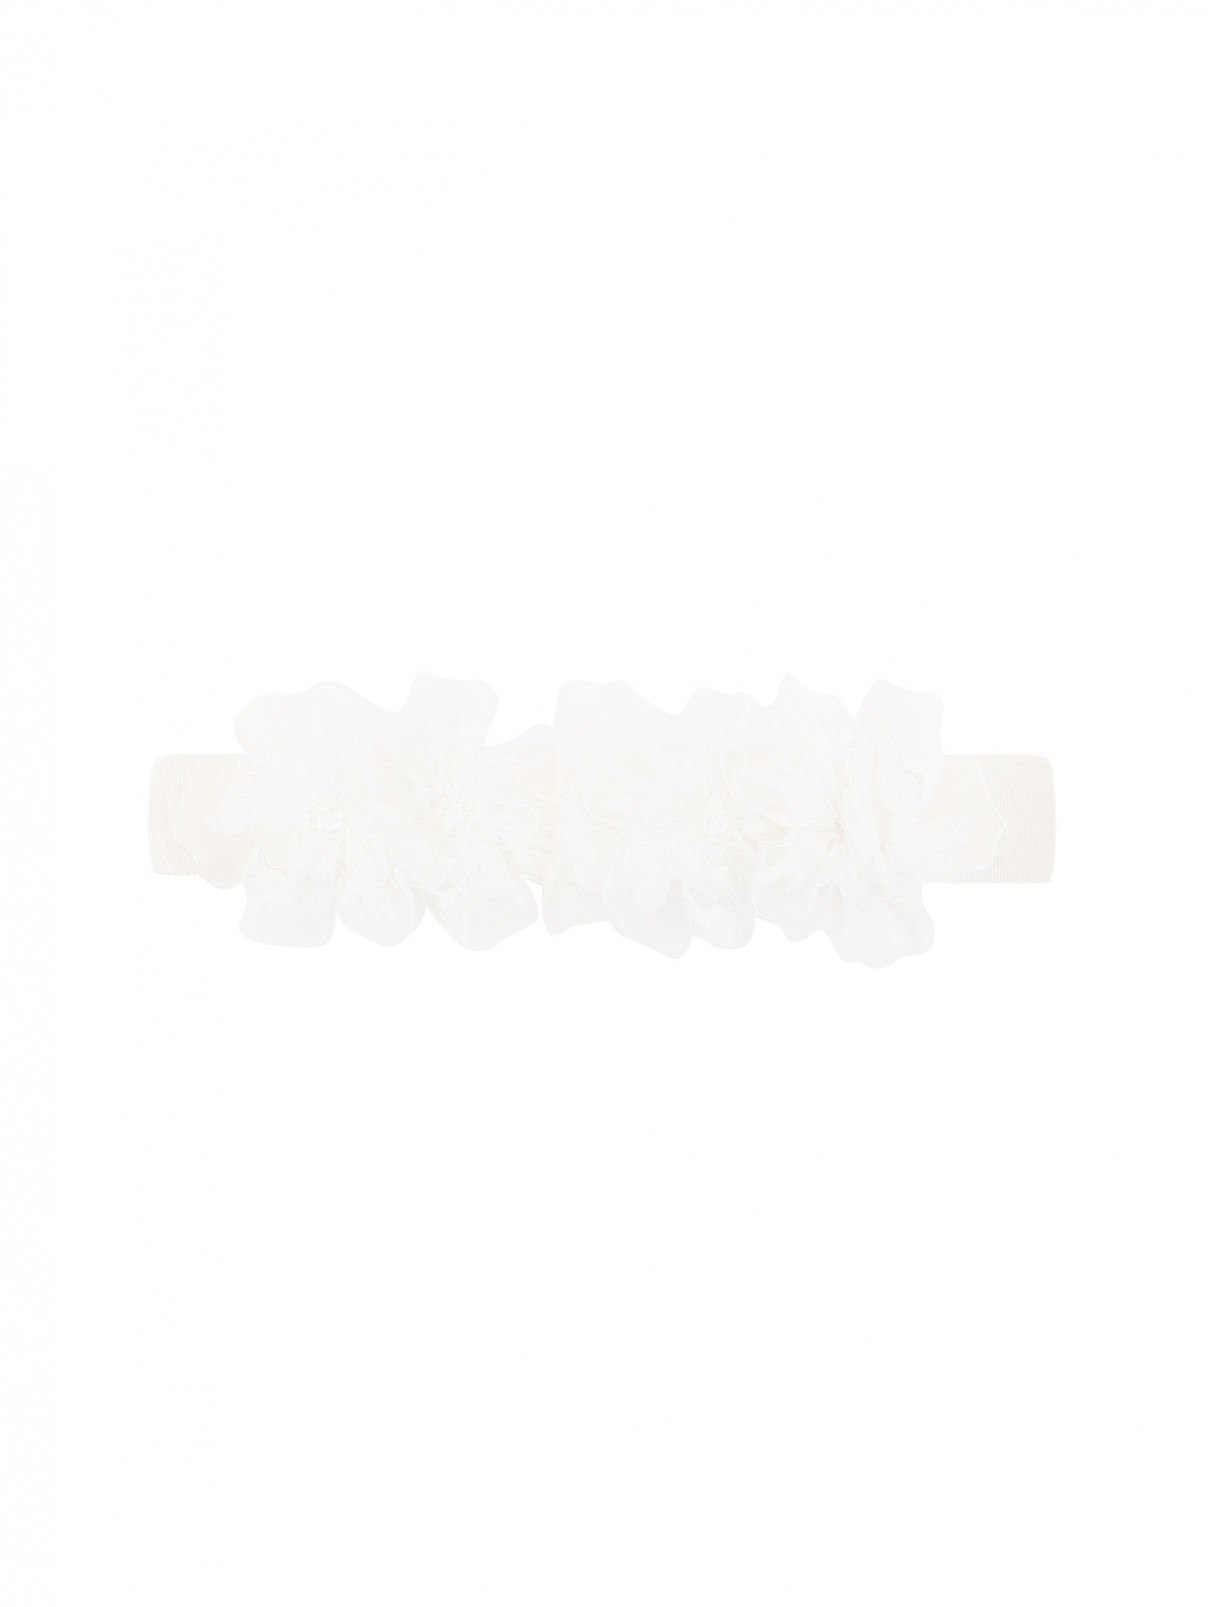 Пояс из хлопка и шелка с декоративной отделкой Max Mara  –  Общий вид  – Цвет:  Белый